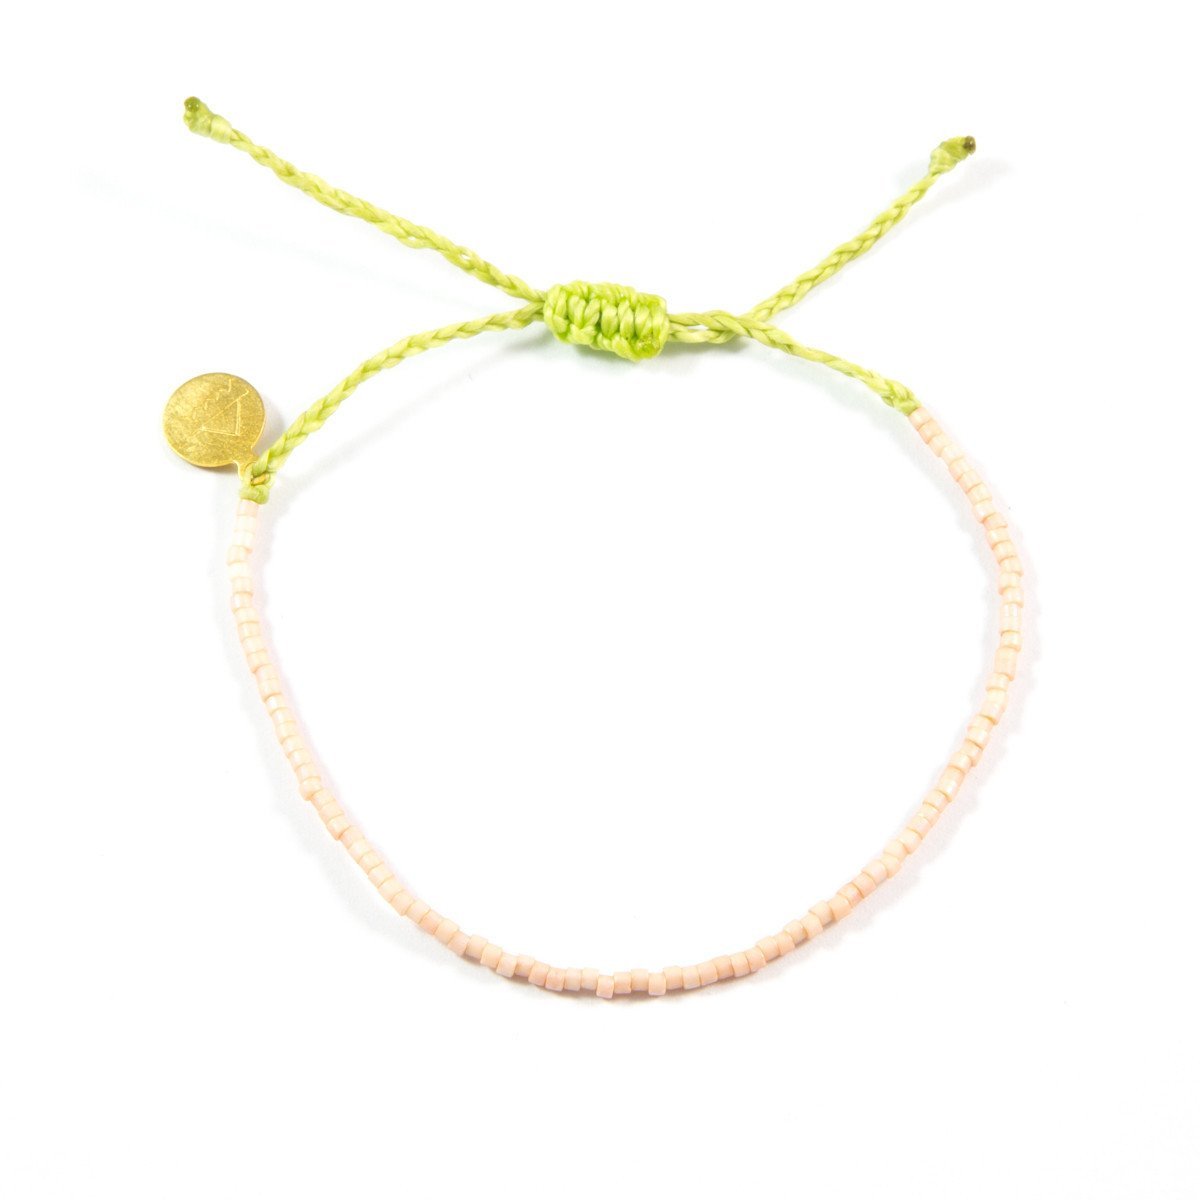 Coconut Girl Bracelet Stack / Pura Vida Style Bracelet/ Bracelet